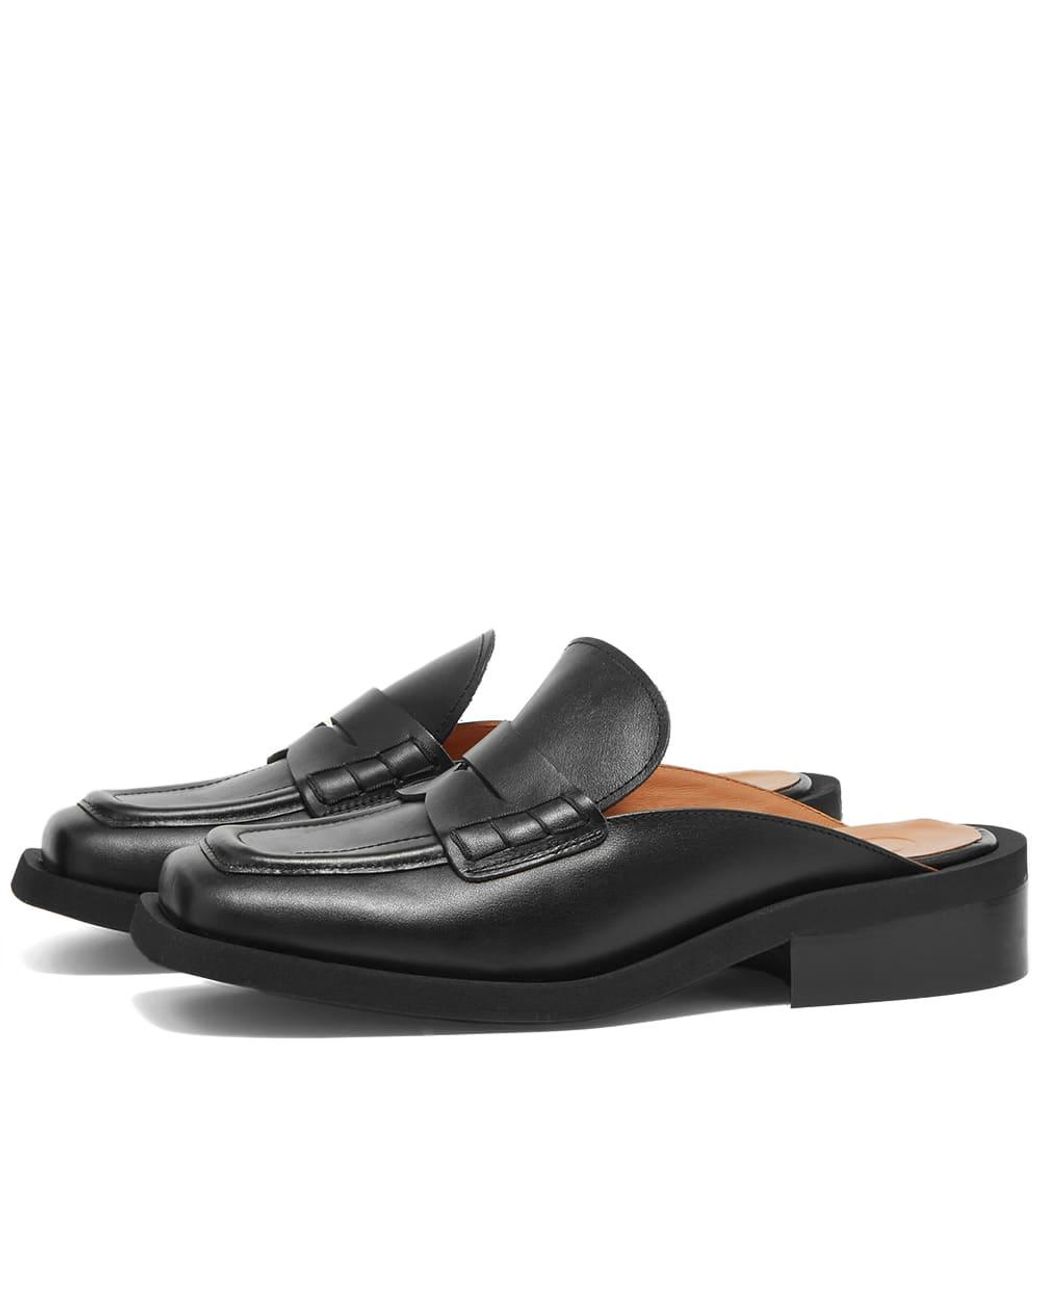 Ganni Leather Slip On Loafer in Black | Lyst